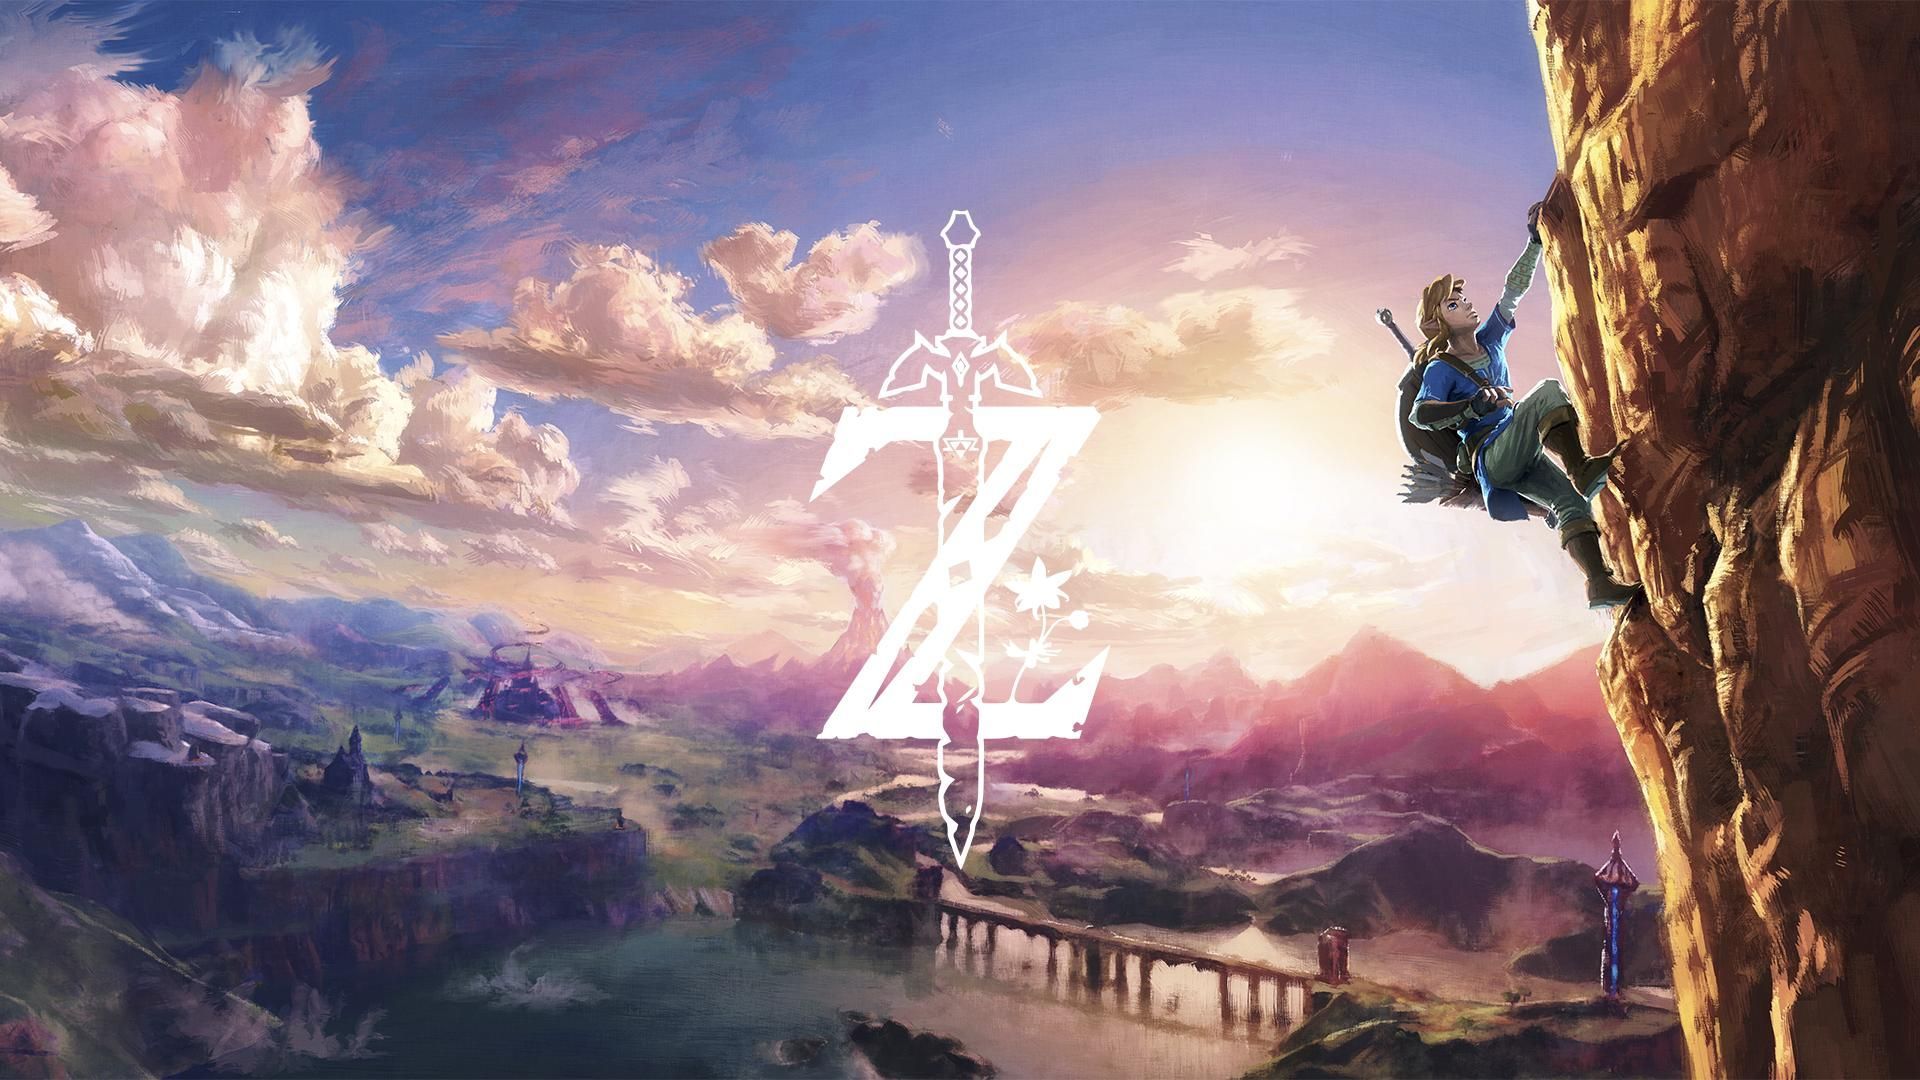 The Legend of Zelda: Breath of the Wild #wallpaper. Descargar